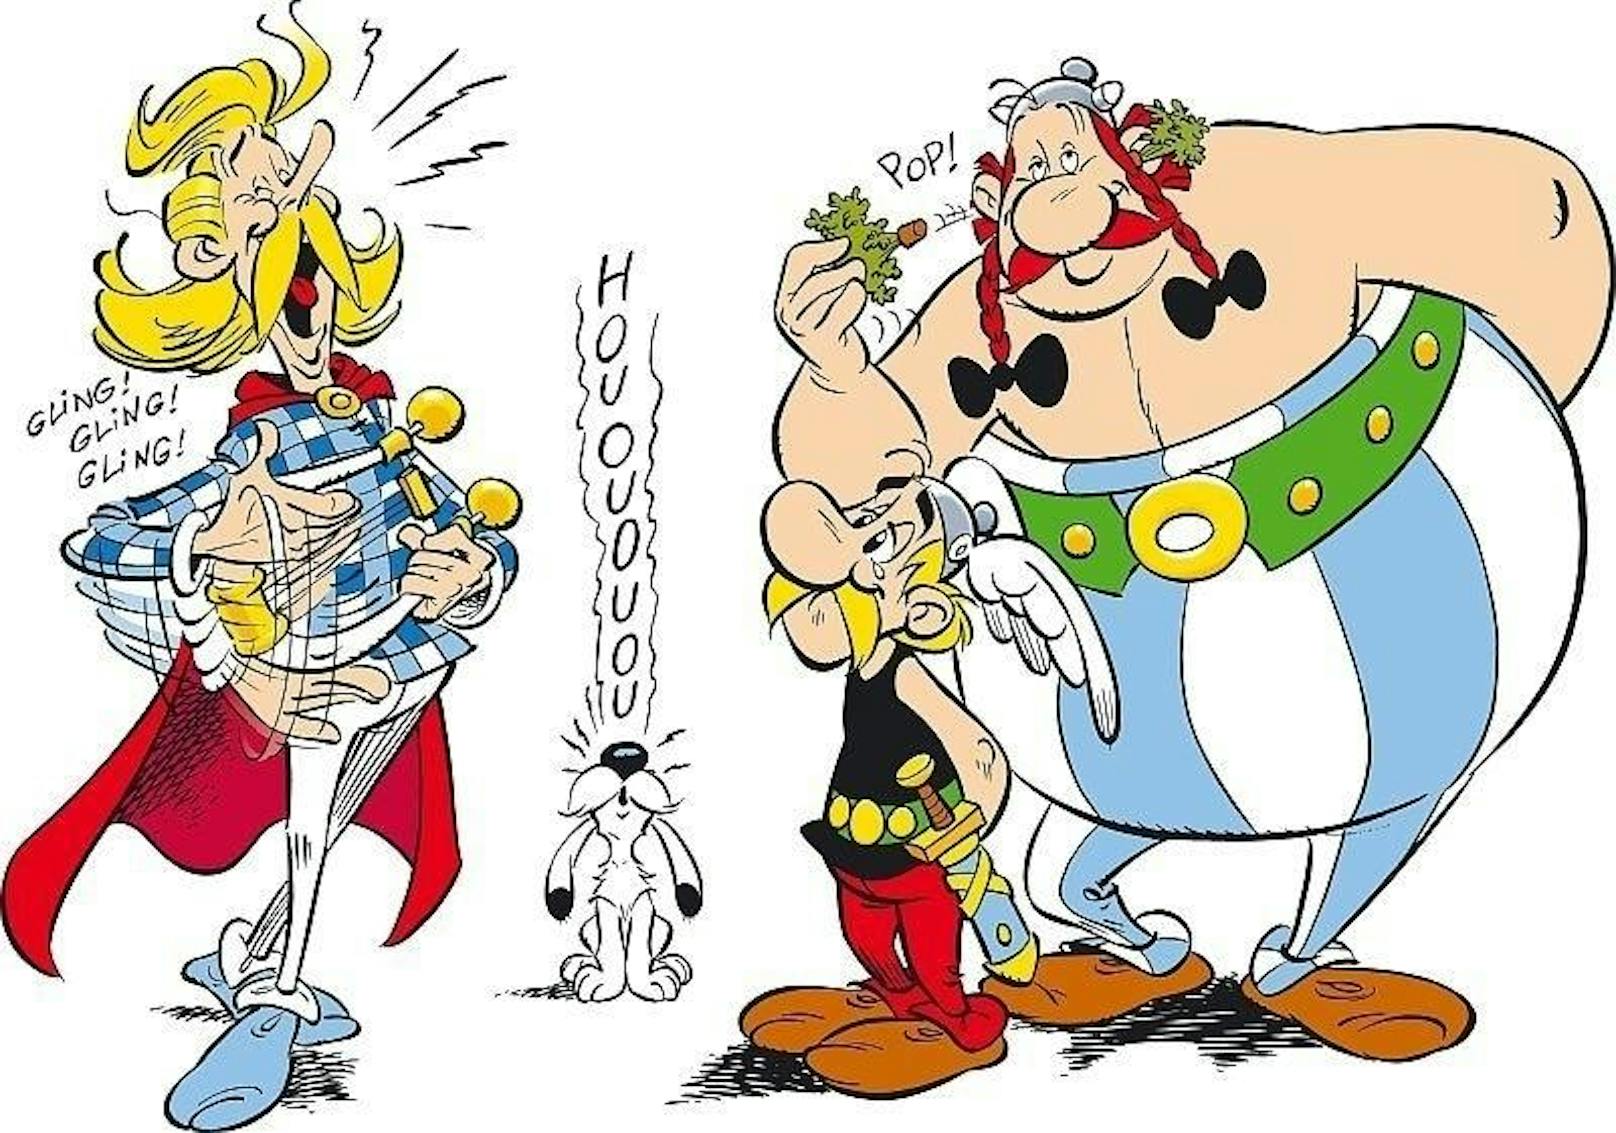 1971 erschien Band 10. Auch der deutschsprachige Raum ist inzwischen vom Asterix-Fieber angesteckt. Die Auflage erreicht erstmals 1 Million.